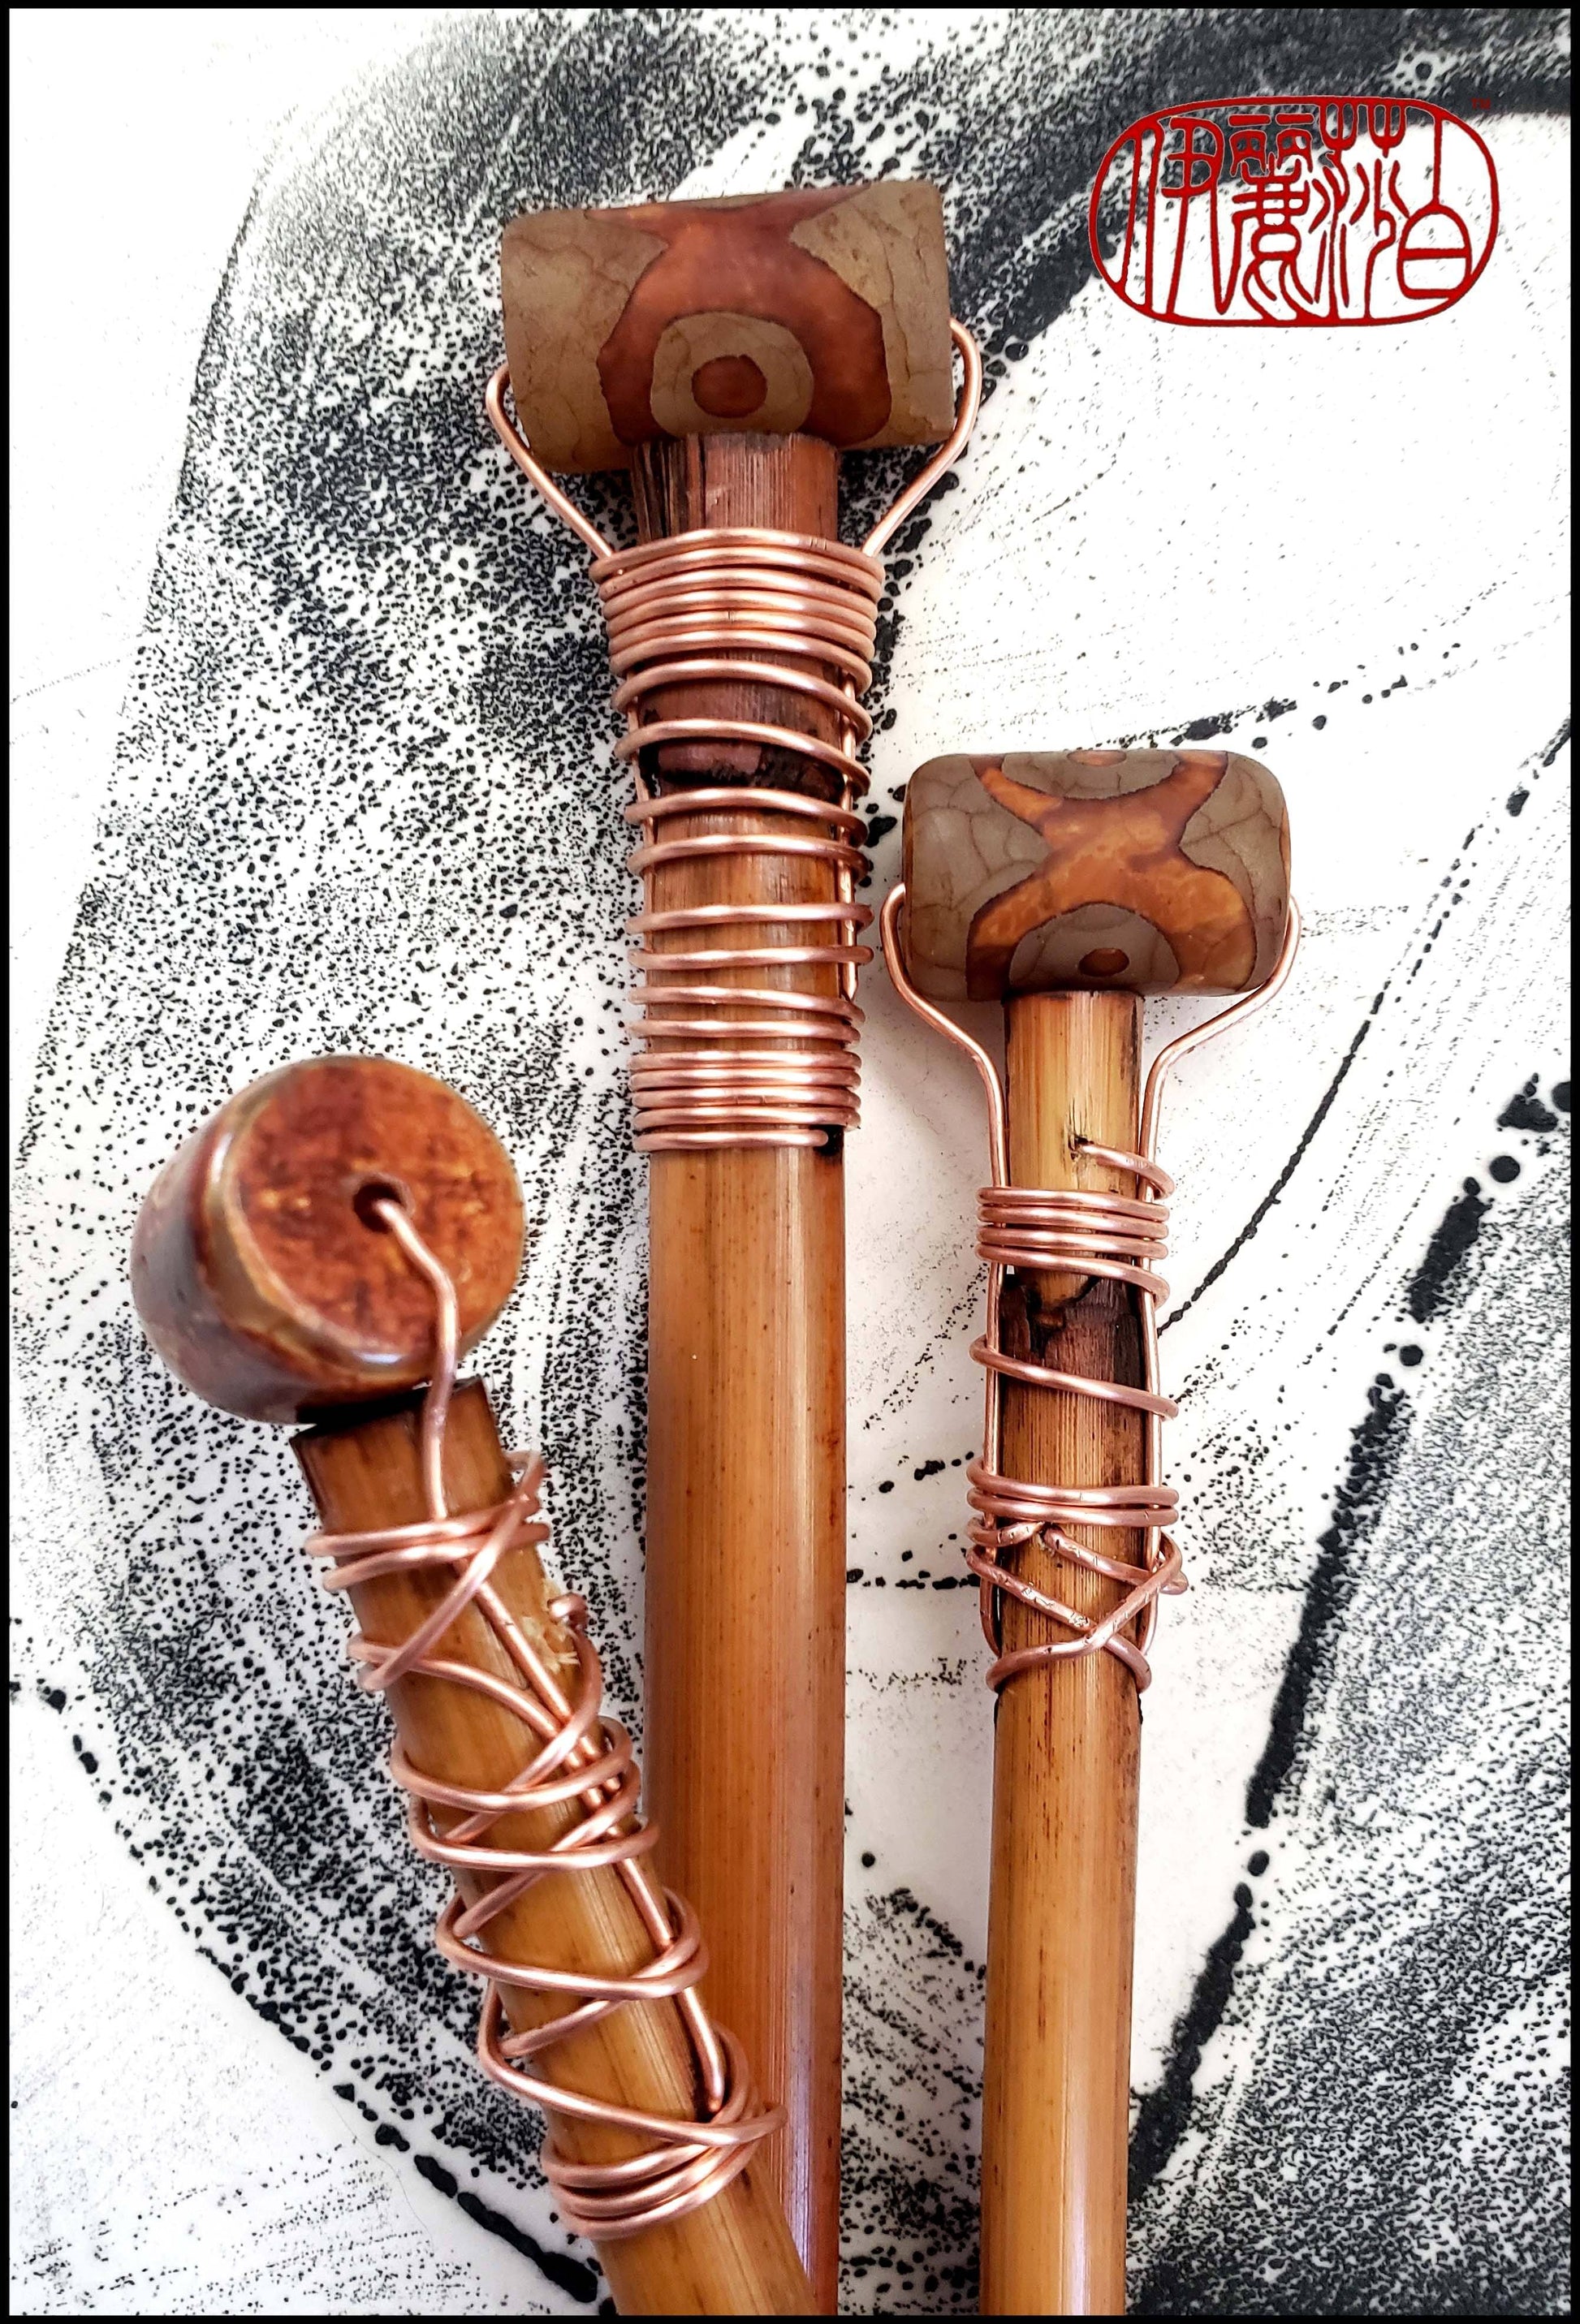 https://elizabethschowachertart.com/cdn/shop/products/encaustic-monotype-drawing-pens-handmade-art-brush-art-supplies-elizabeth-schowachert-art-natural-bead-and-copper-189639.jpg?v=1676735522&width=1946